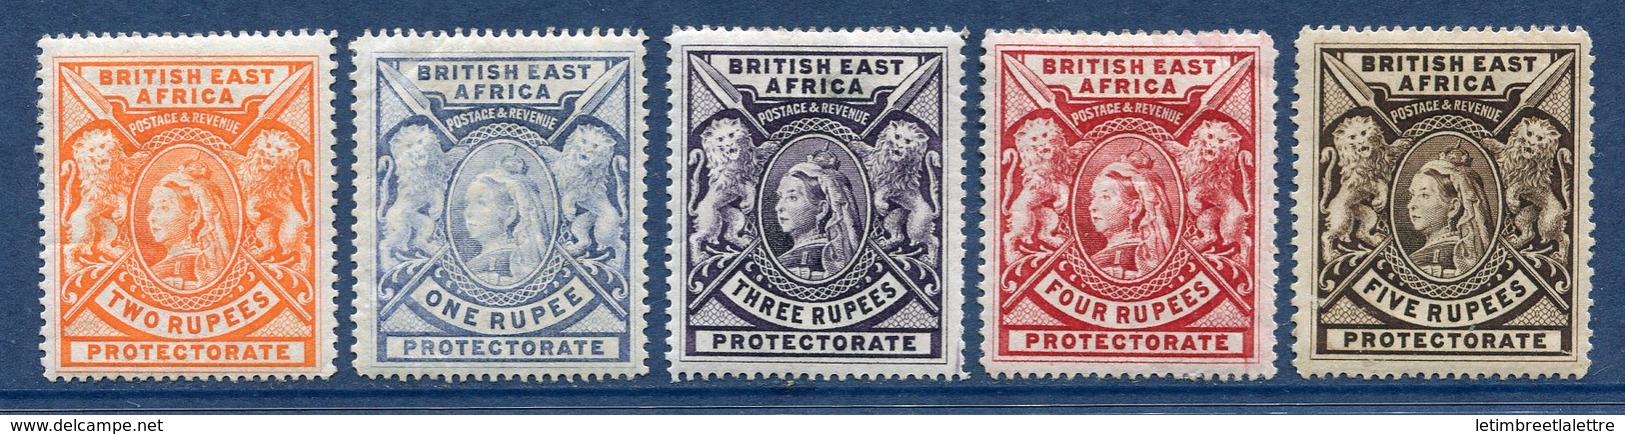 ⭐ Afrique Orientale Britannique - YT N° 76 à 80 * - Neuf Avec Charnière ⭐ - África Oriental Británica